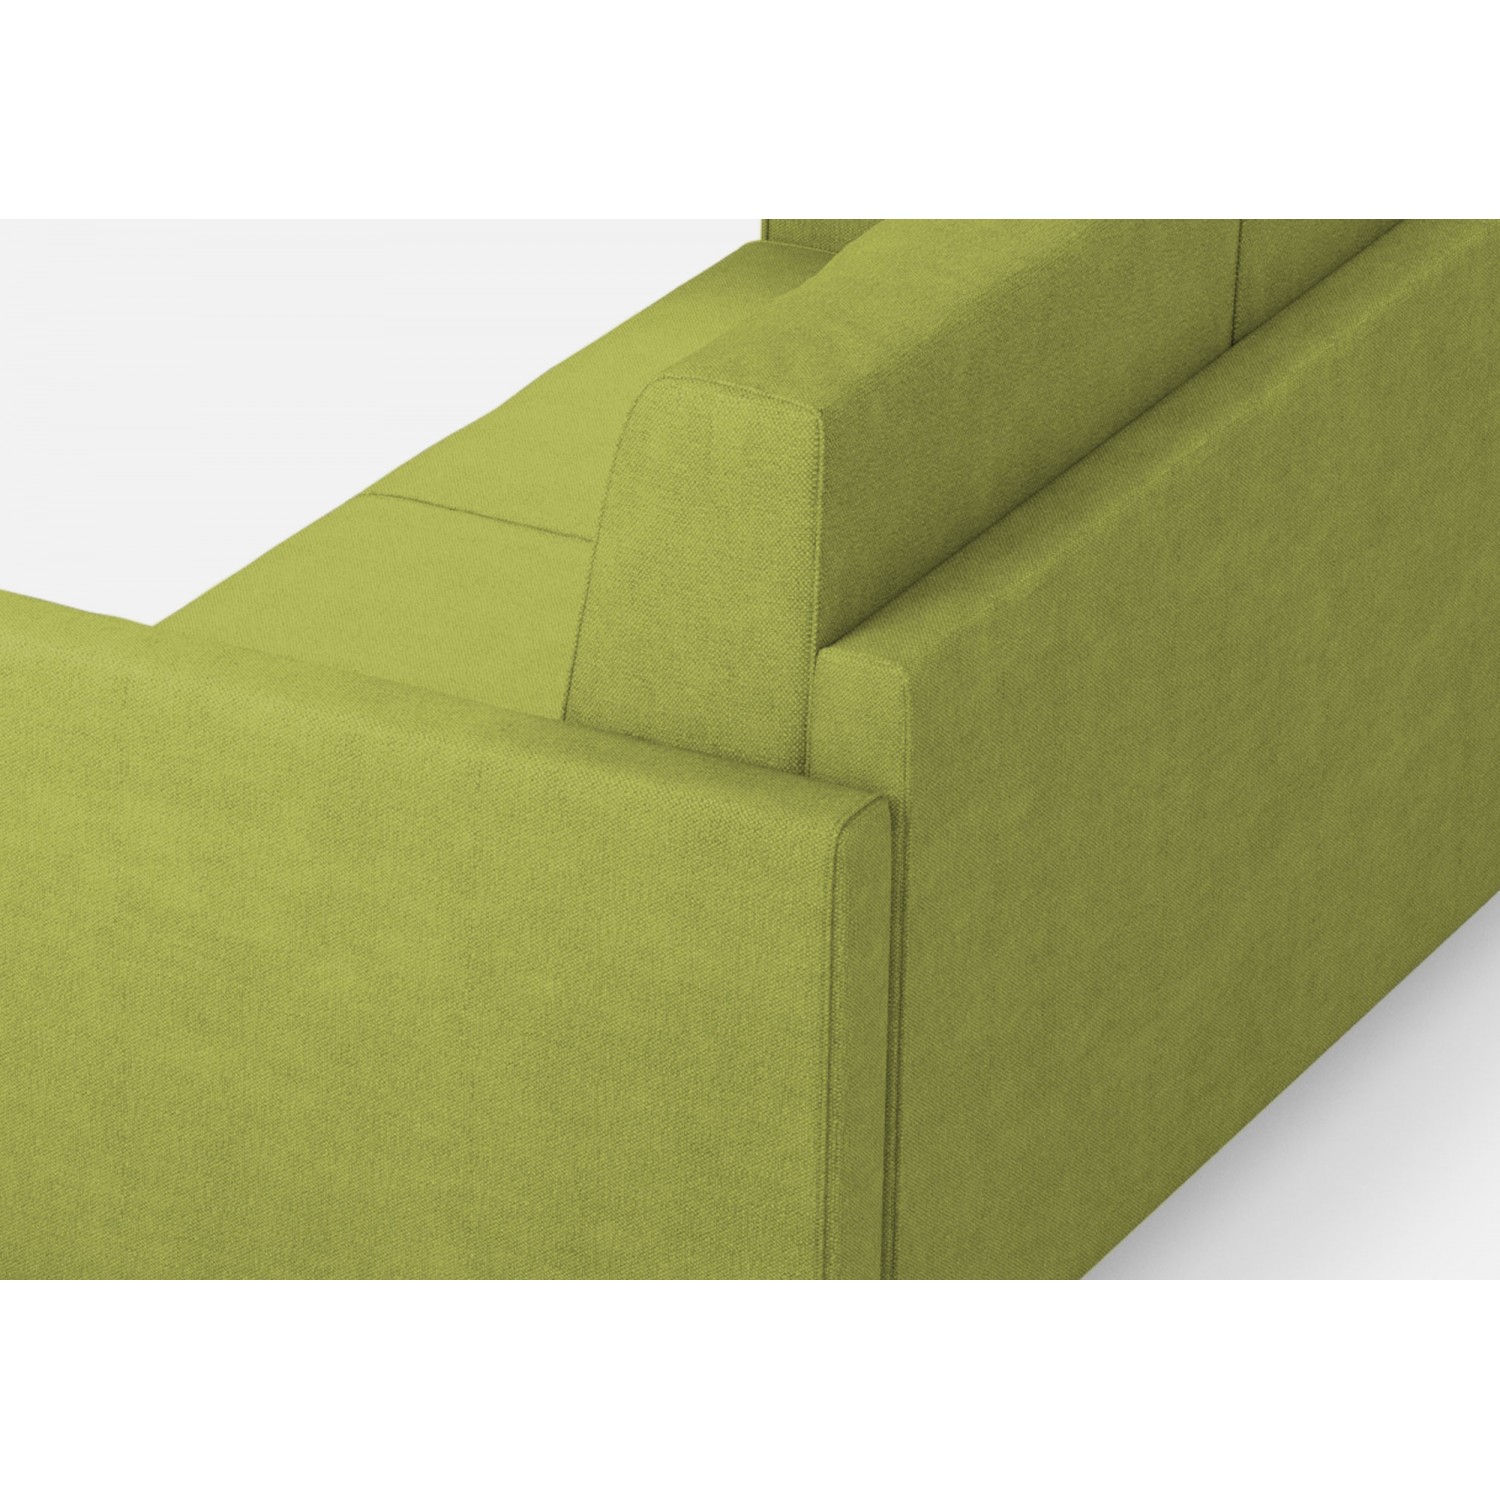 Ityhome Divano Karay 2 posti medio (due sedute da 70cm) + angolo + divano 2 posti medio (due sedute da 70cm) misure esterne L.241x241 colore verde